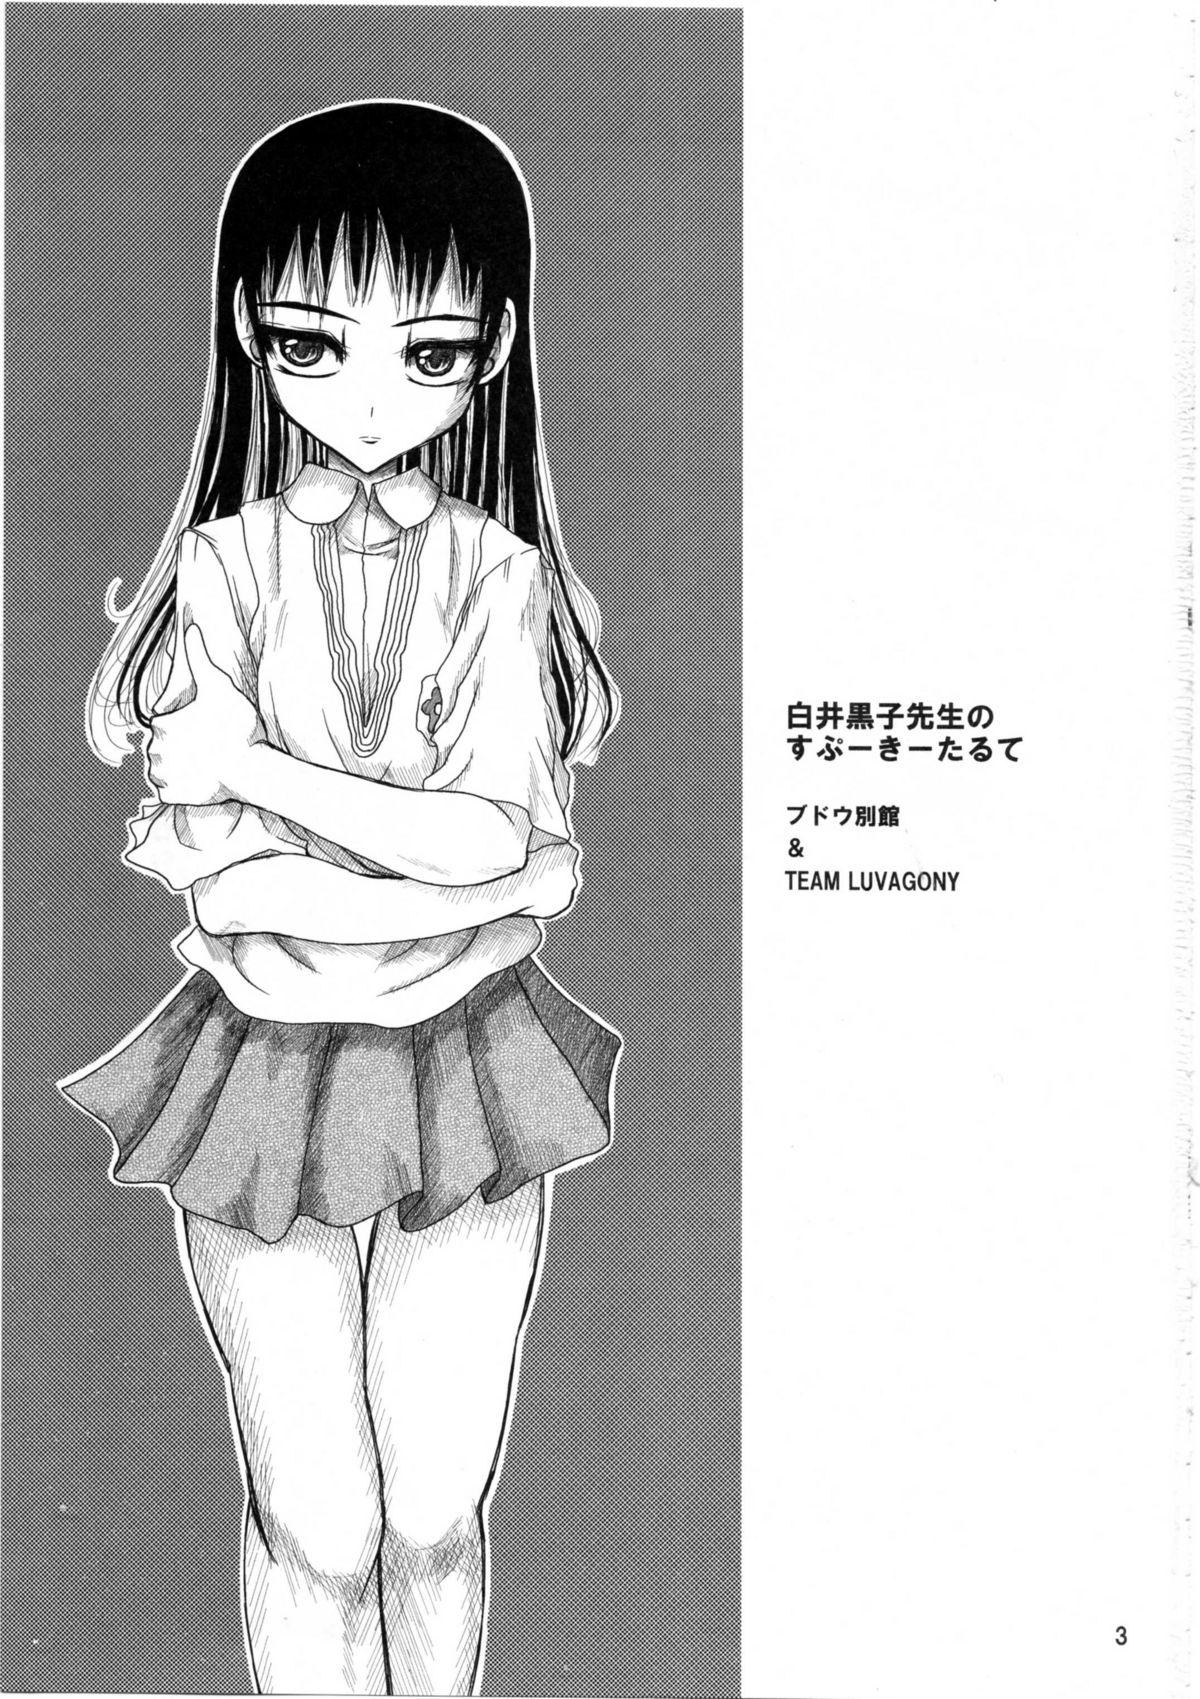 Strange Shirai Kuroko Sensei no Spooky tarte - Toaru kagaku no railgun Real bout high school Sharing - Page 2